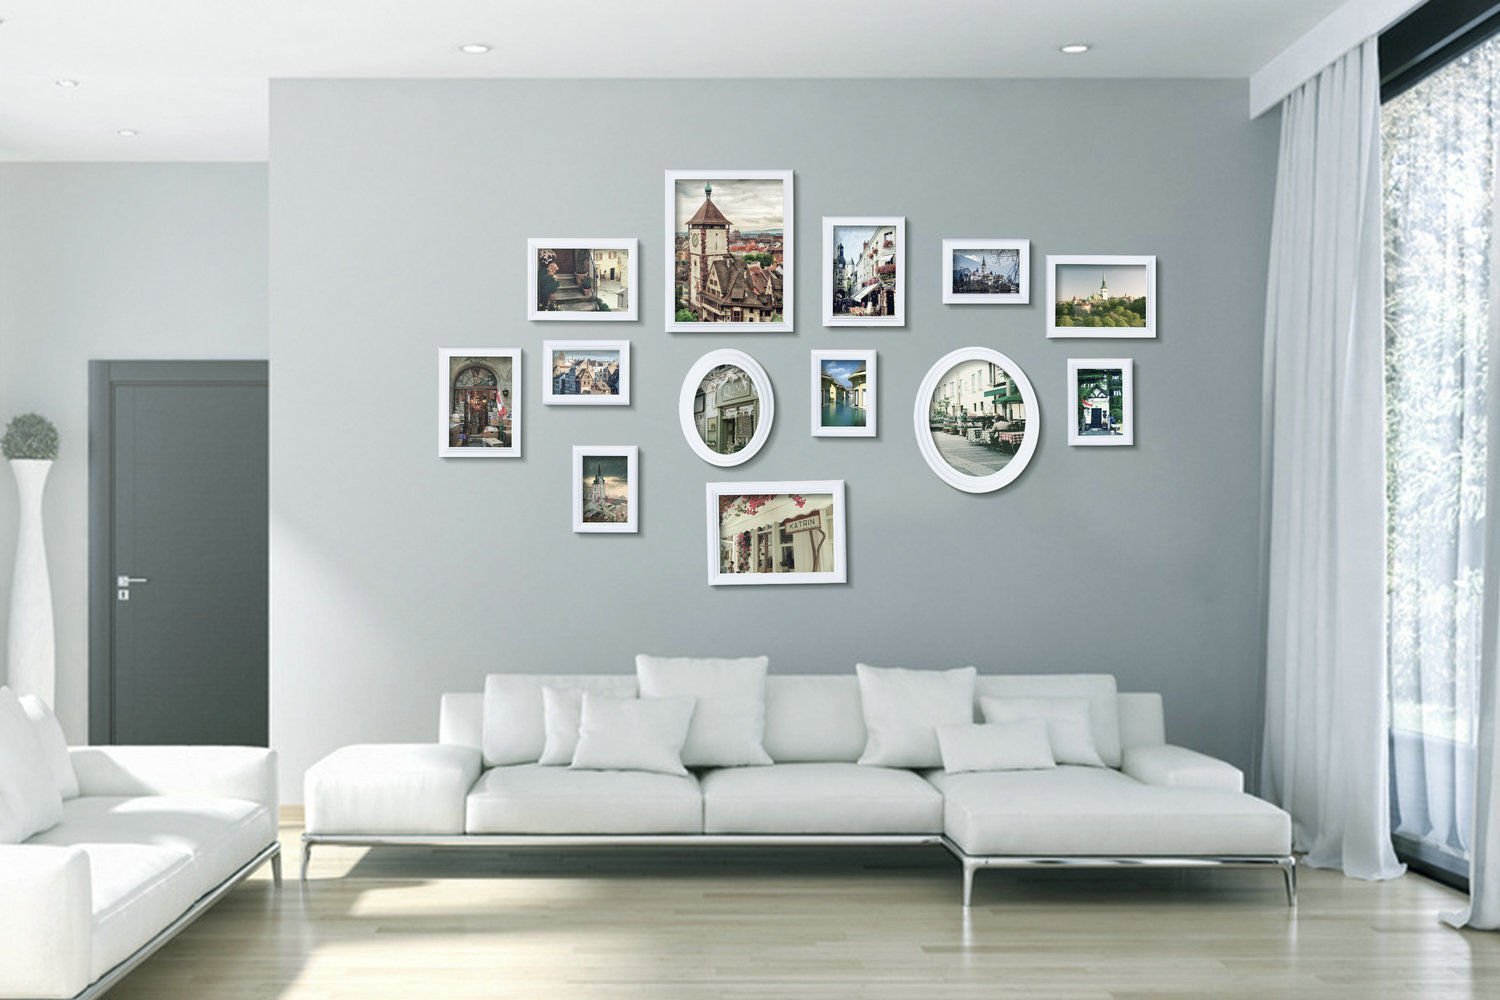 Как красиво развесить фотографии на стене без рамок распечатанные